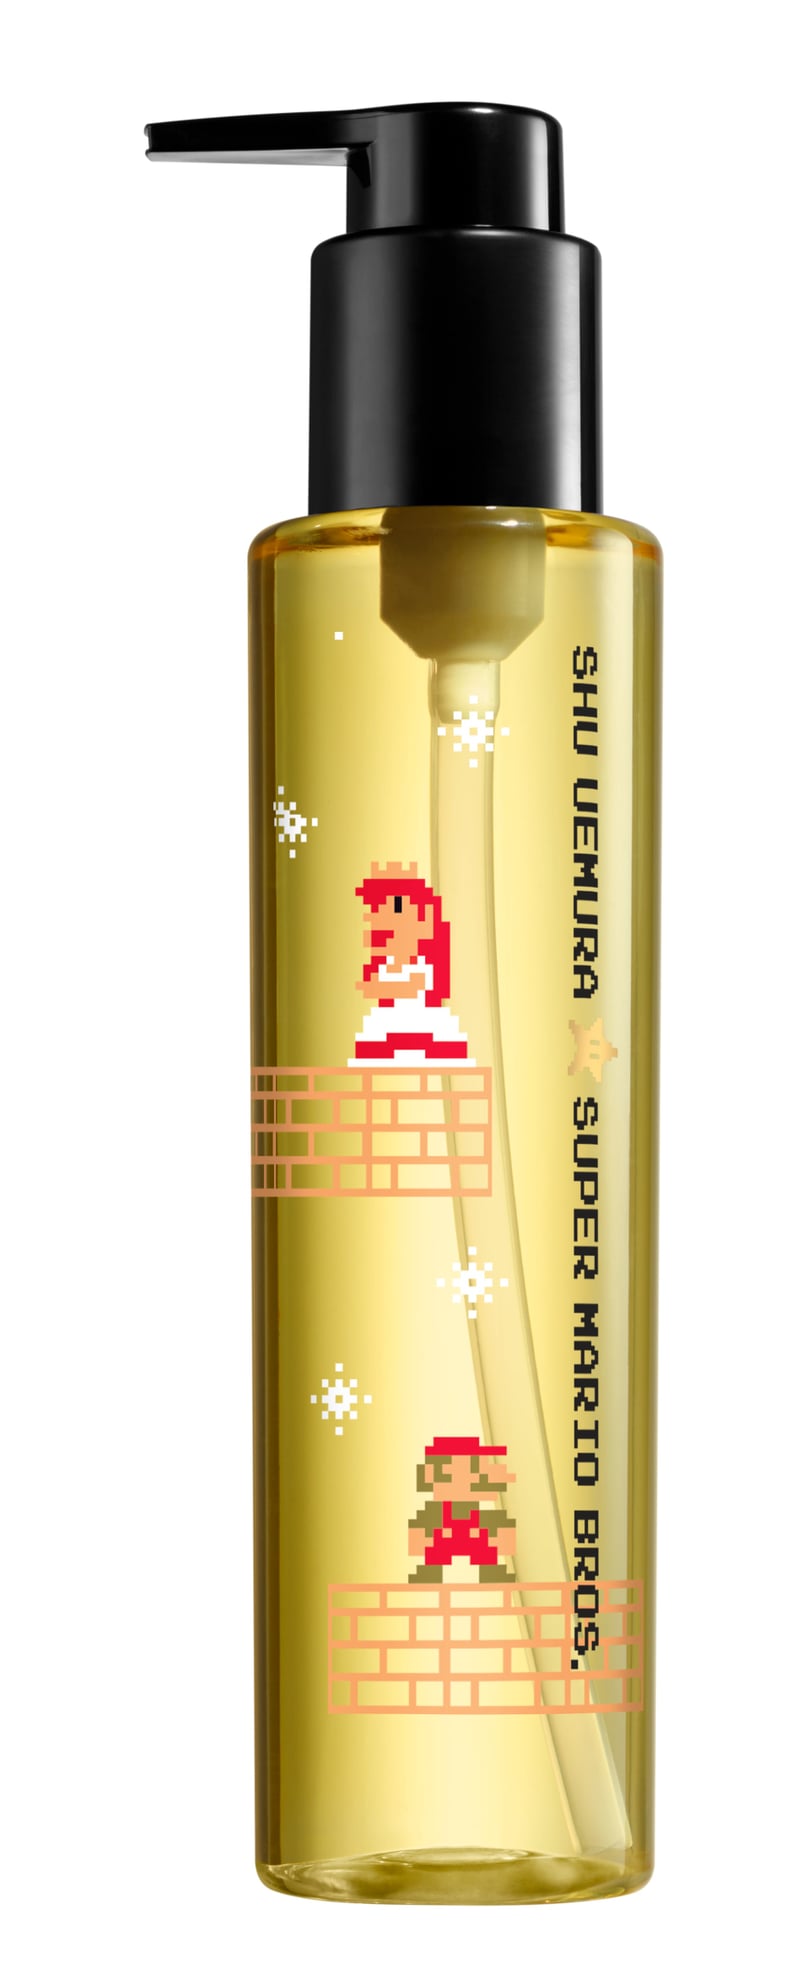 Shu Uemura x Super Mario Bros. Essence Absolue